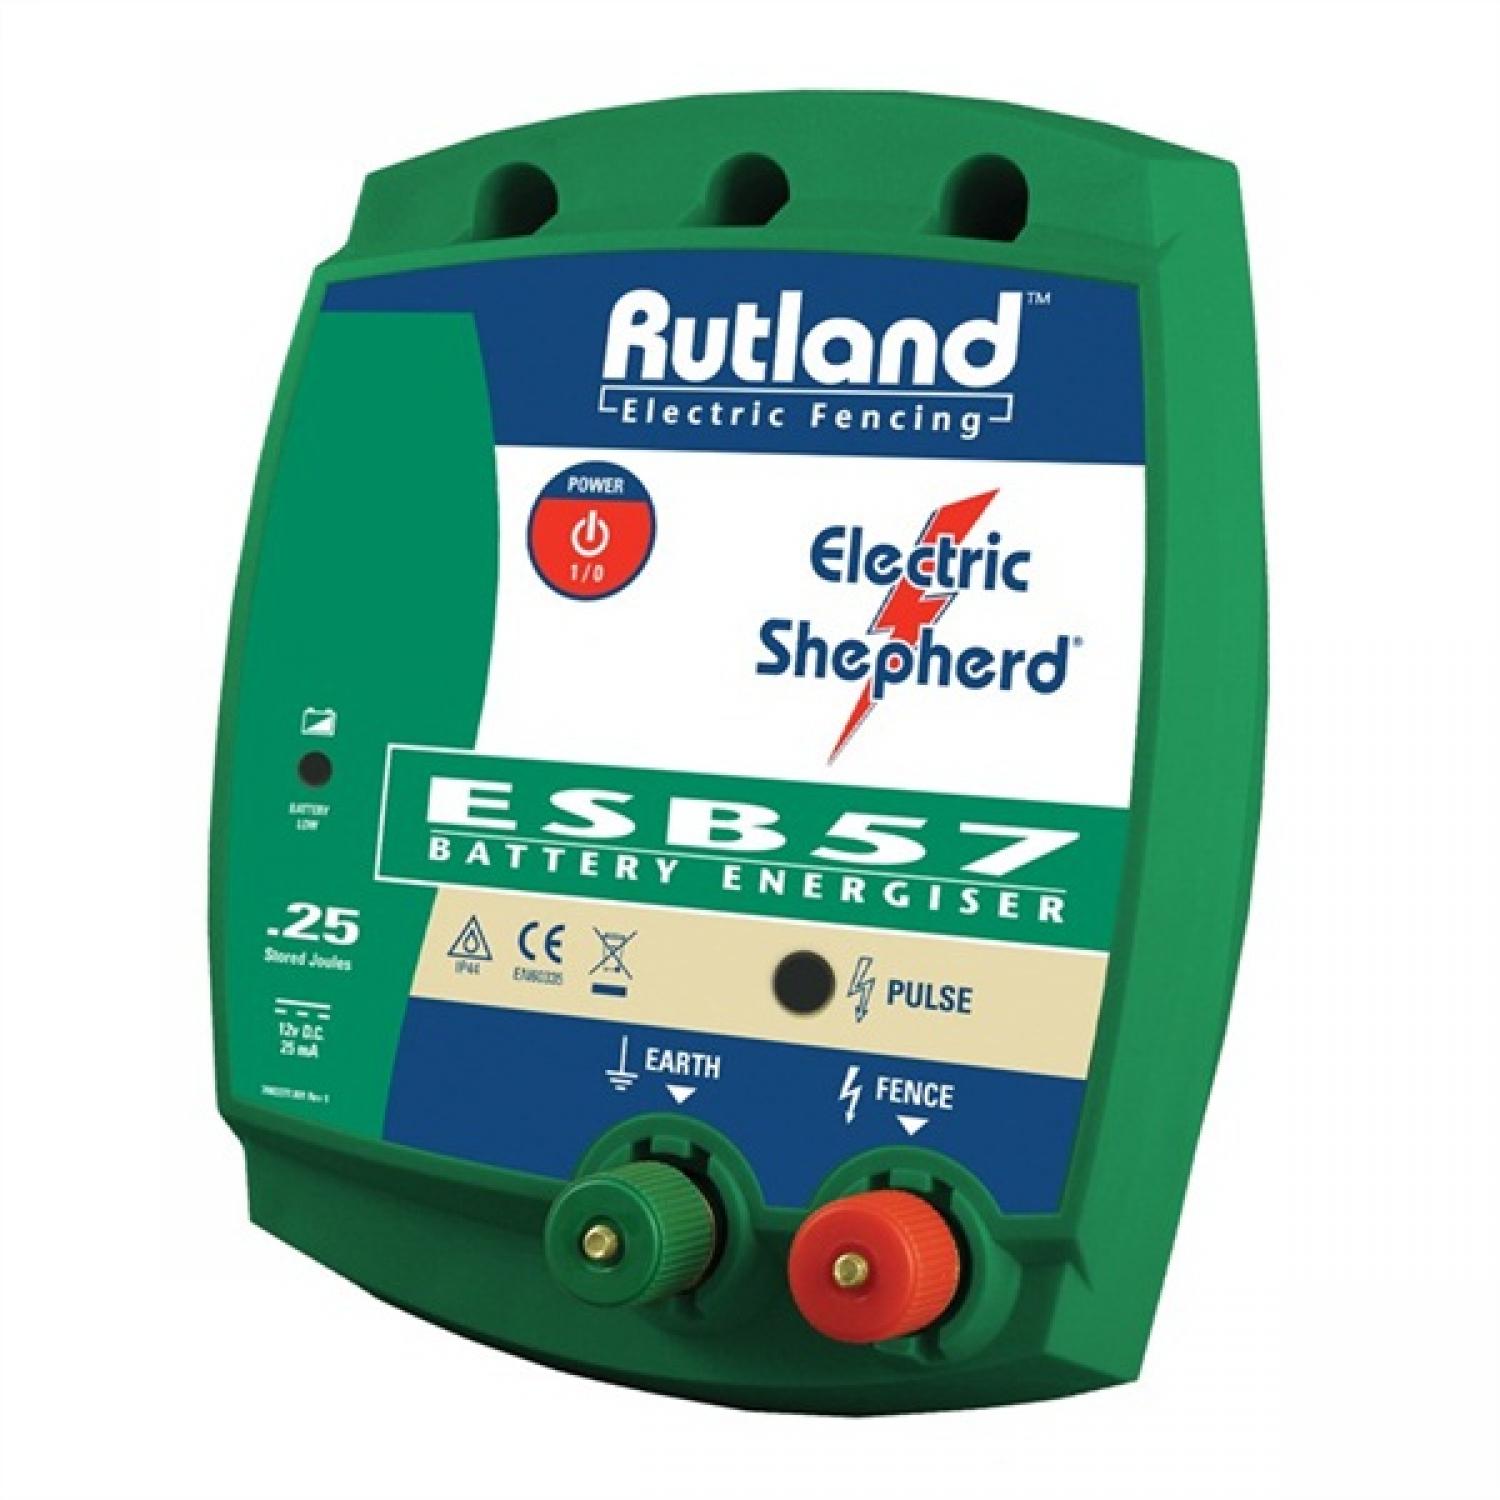 RUTLAND ESB57 FENCE ENERGISER 12v Battery Electric Shepherd 